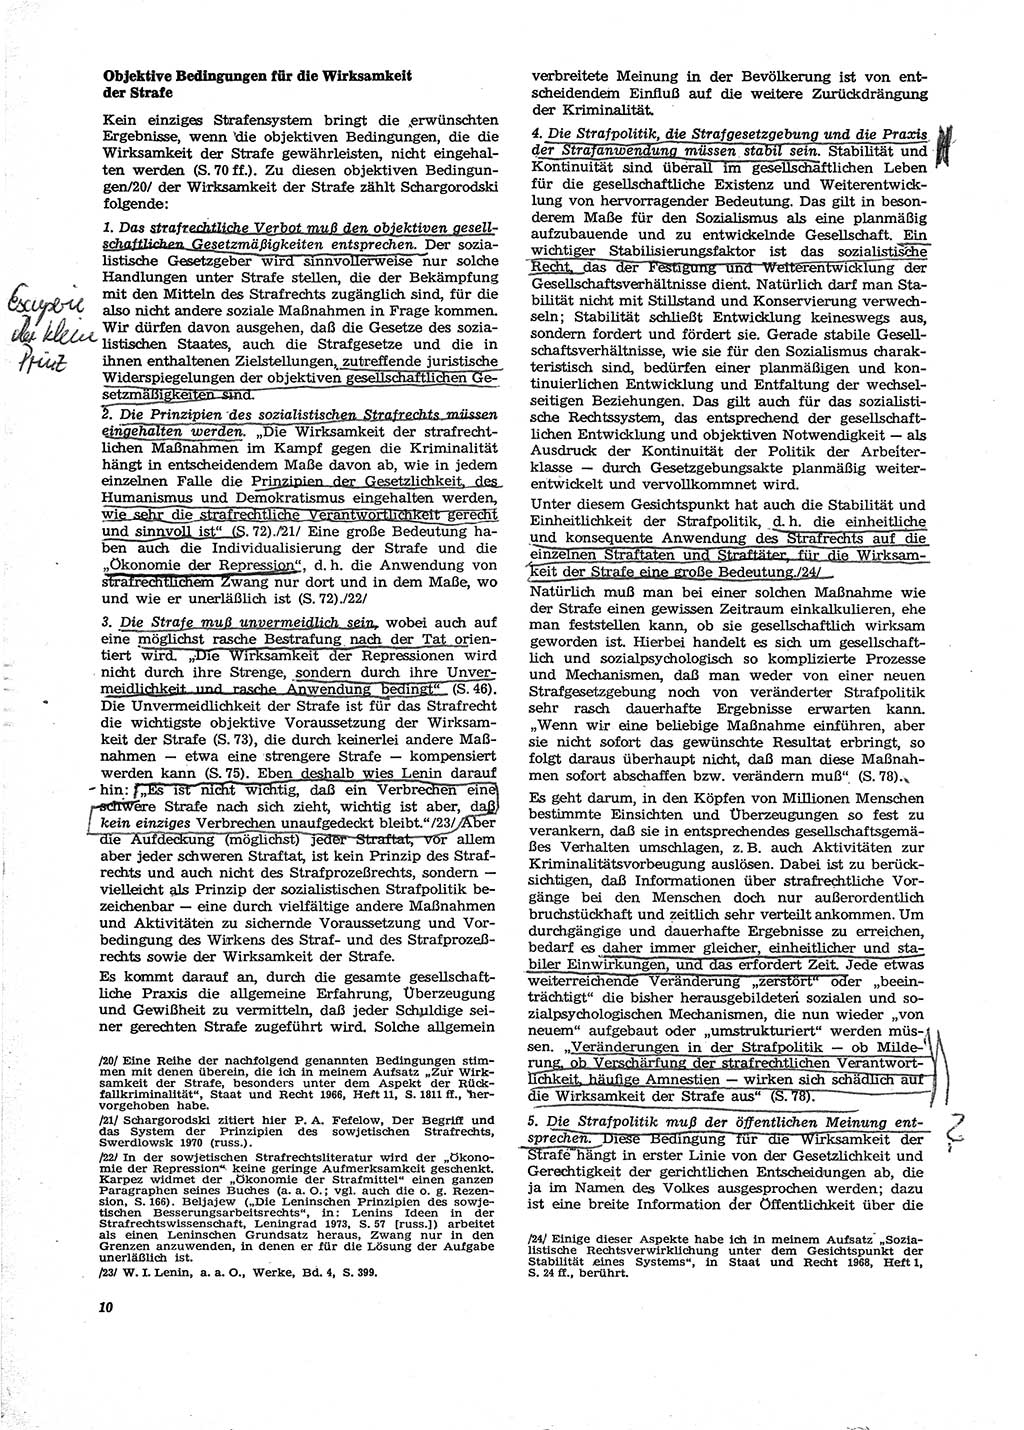 Neue Justiz (NJ), Zeitschrift für Recht und Rechtswissenschaft [Deutsche Demokratische Republik (DDR)], 29. Jahrgang 1975, Seite 10 (NJ DDR 1975, S. 10)